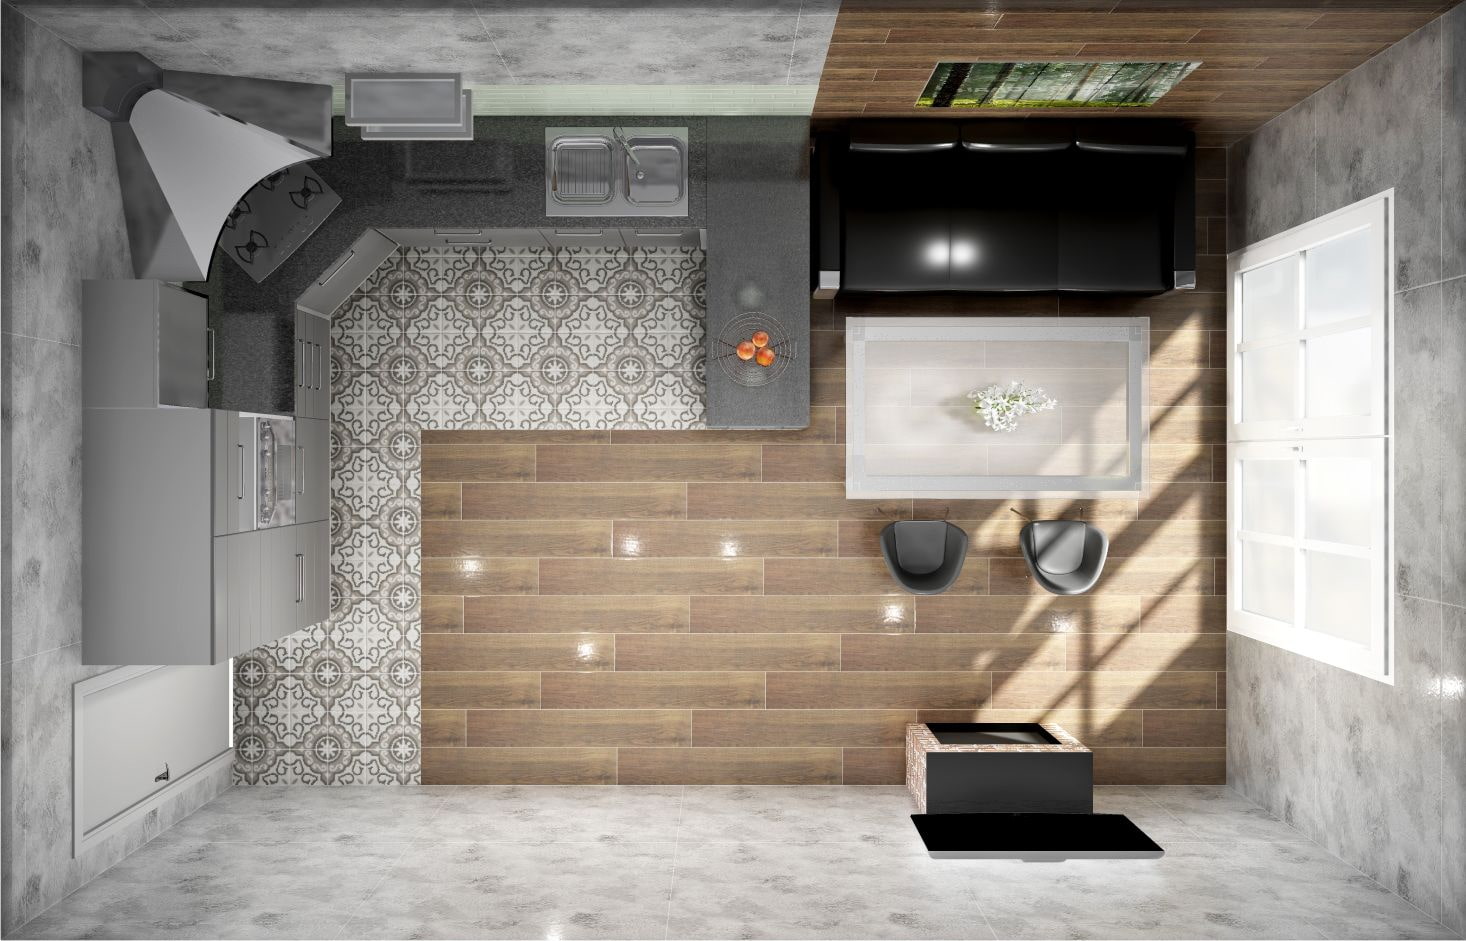 Дизайн кухни гостиной 18 кв м - фото с зонированием